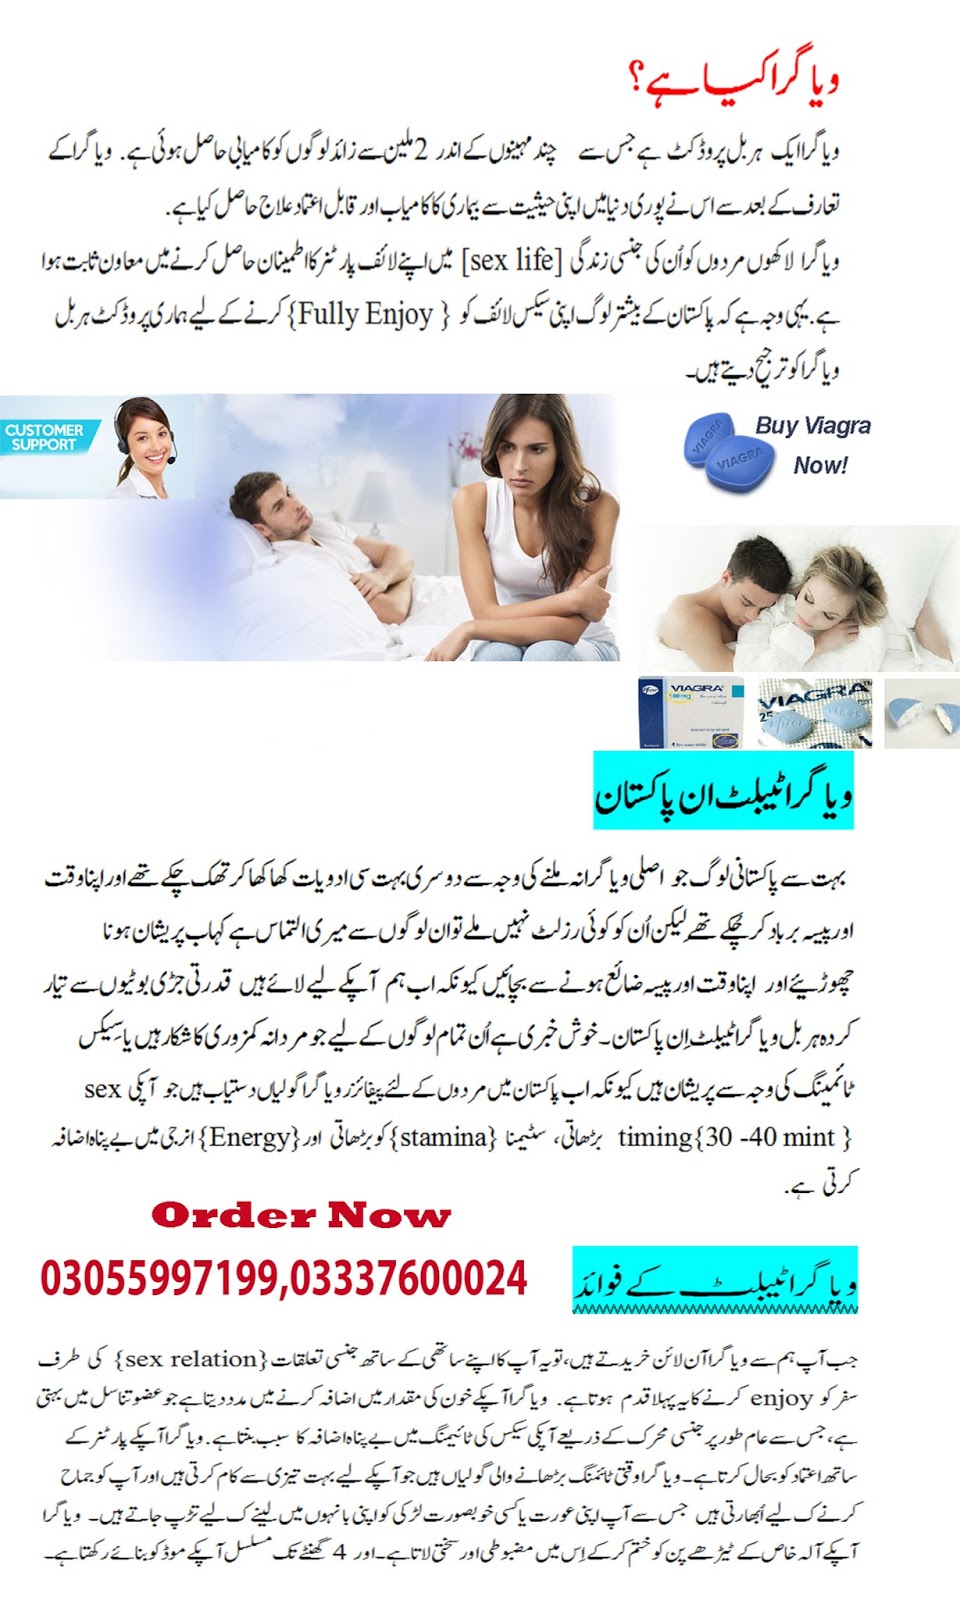 Viagra Tablets in Multan Buy Online Call Us 03055997199